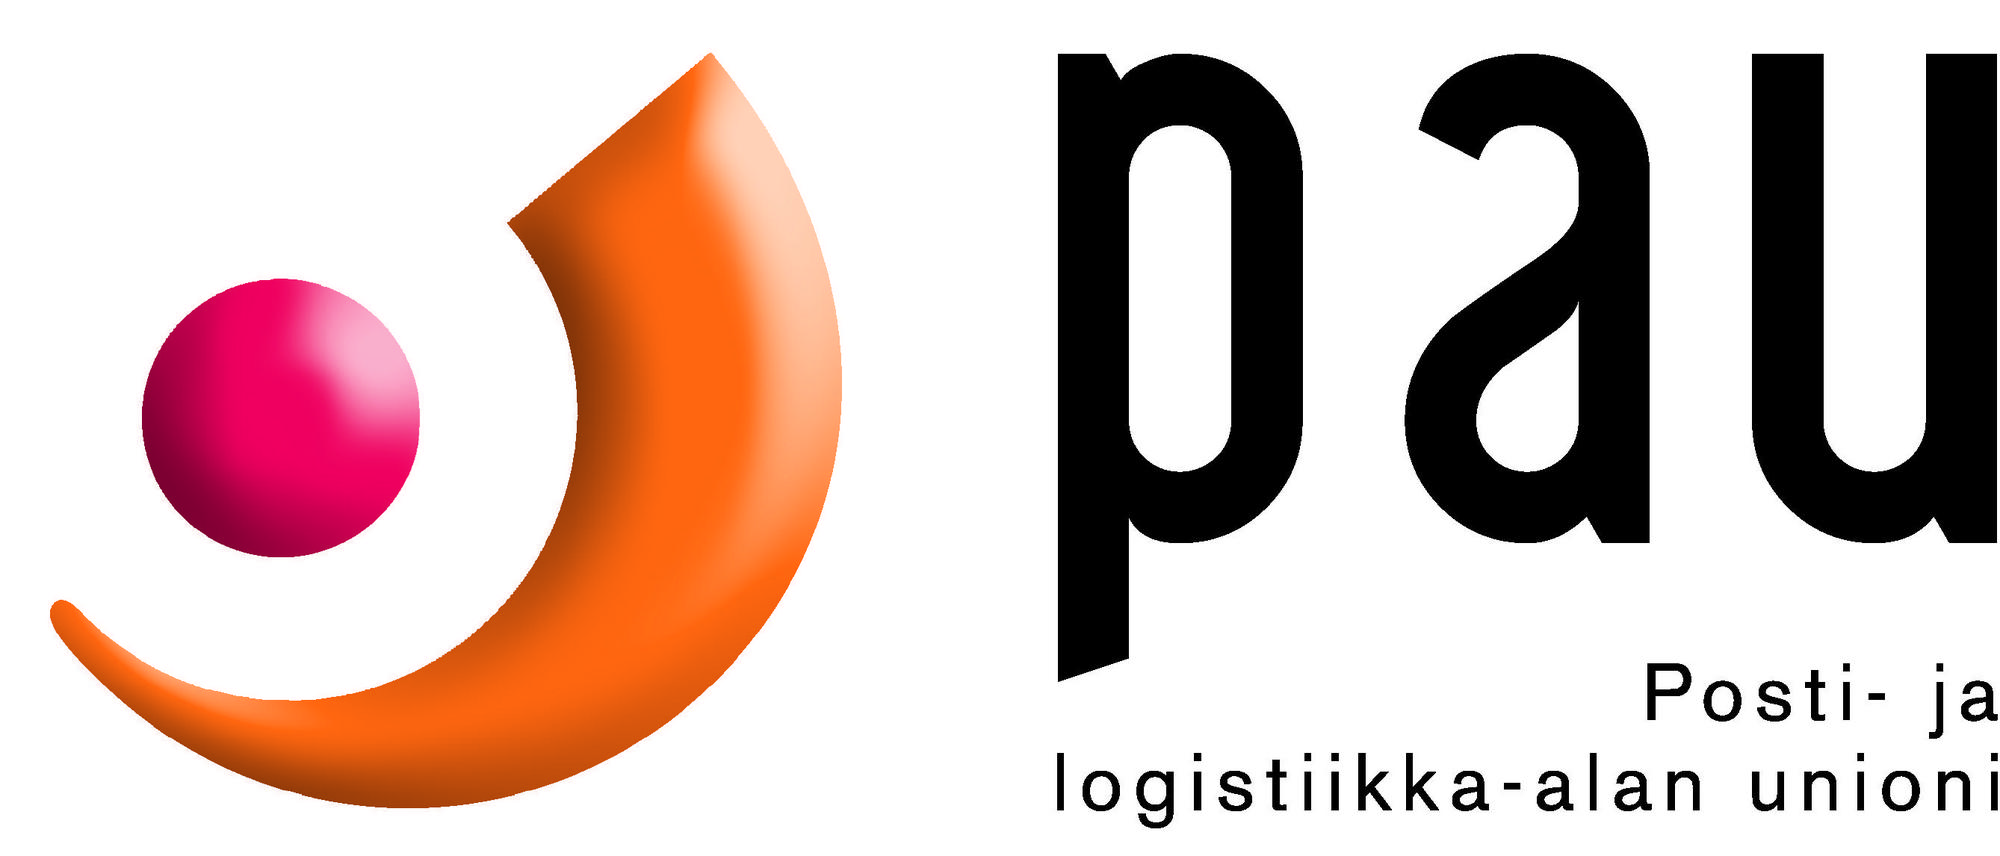 PAU Posti- ja logistiikka-alan unioni PAUn tunnus, kuva toimii linkkinä ja vie sivulle https://www.pau.fi/